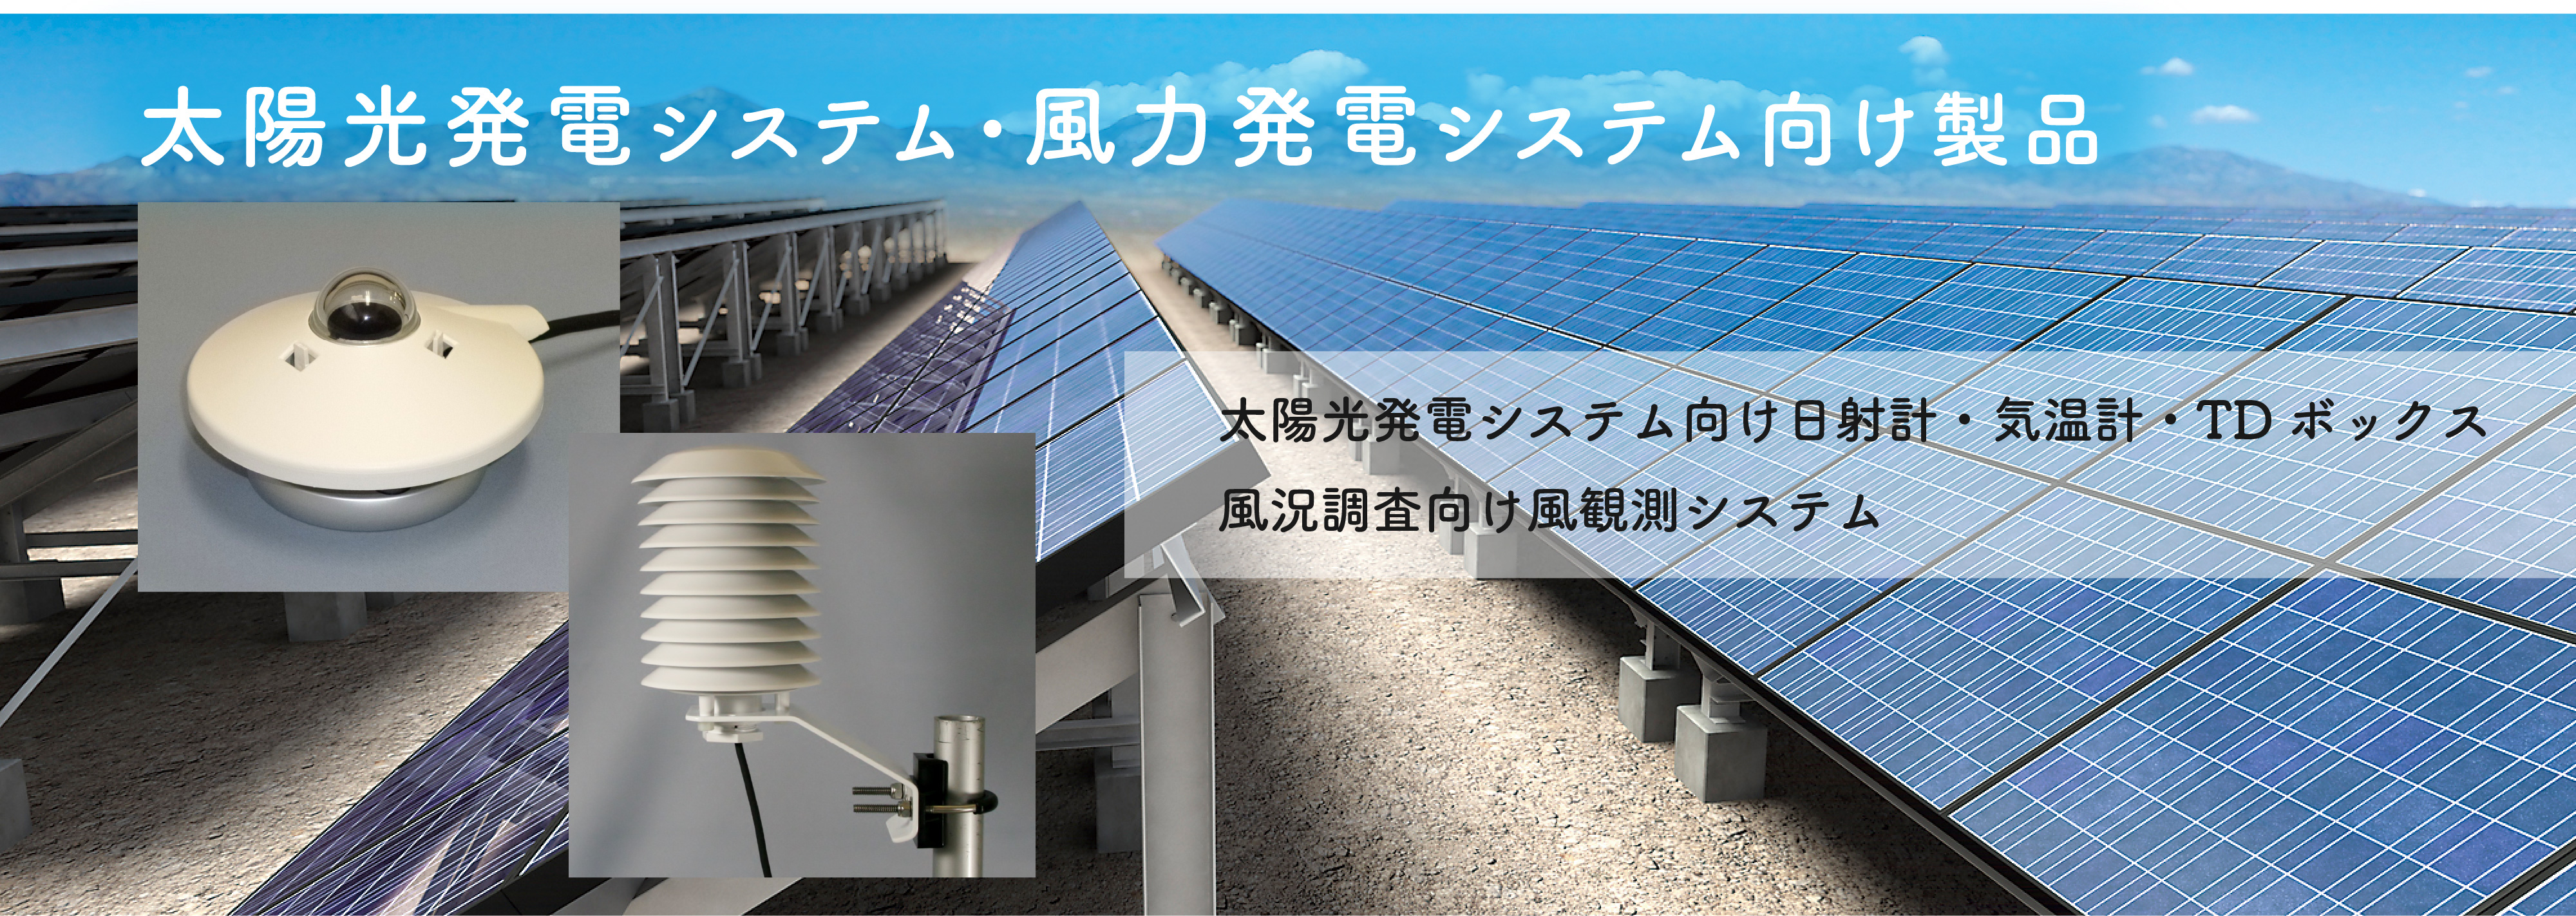 太陽光発電システム・風力発電システム向け製品